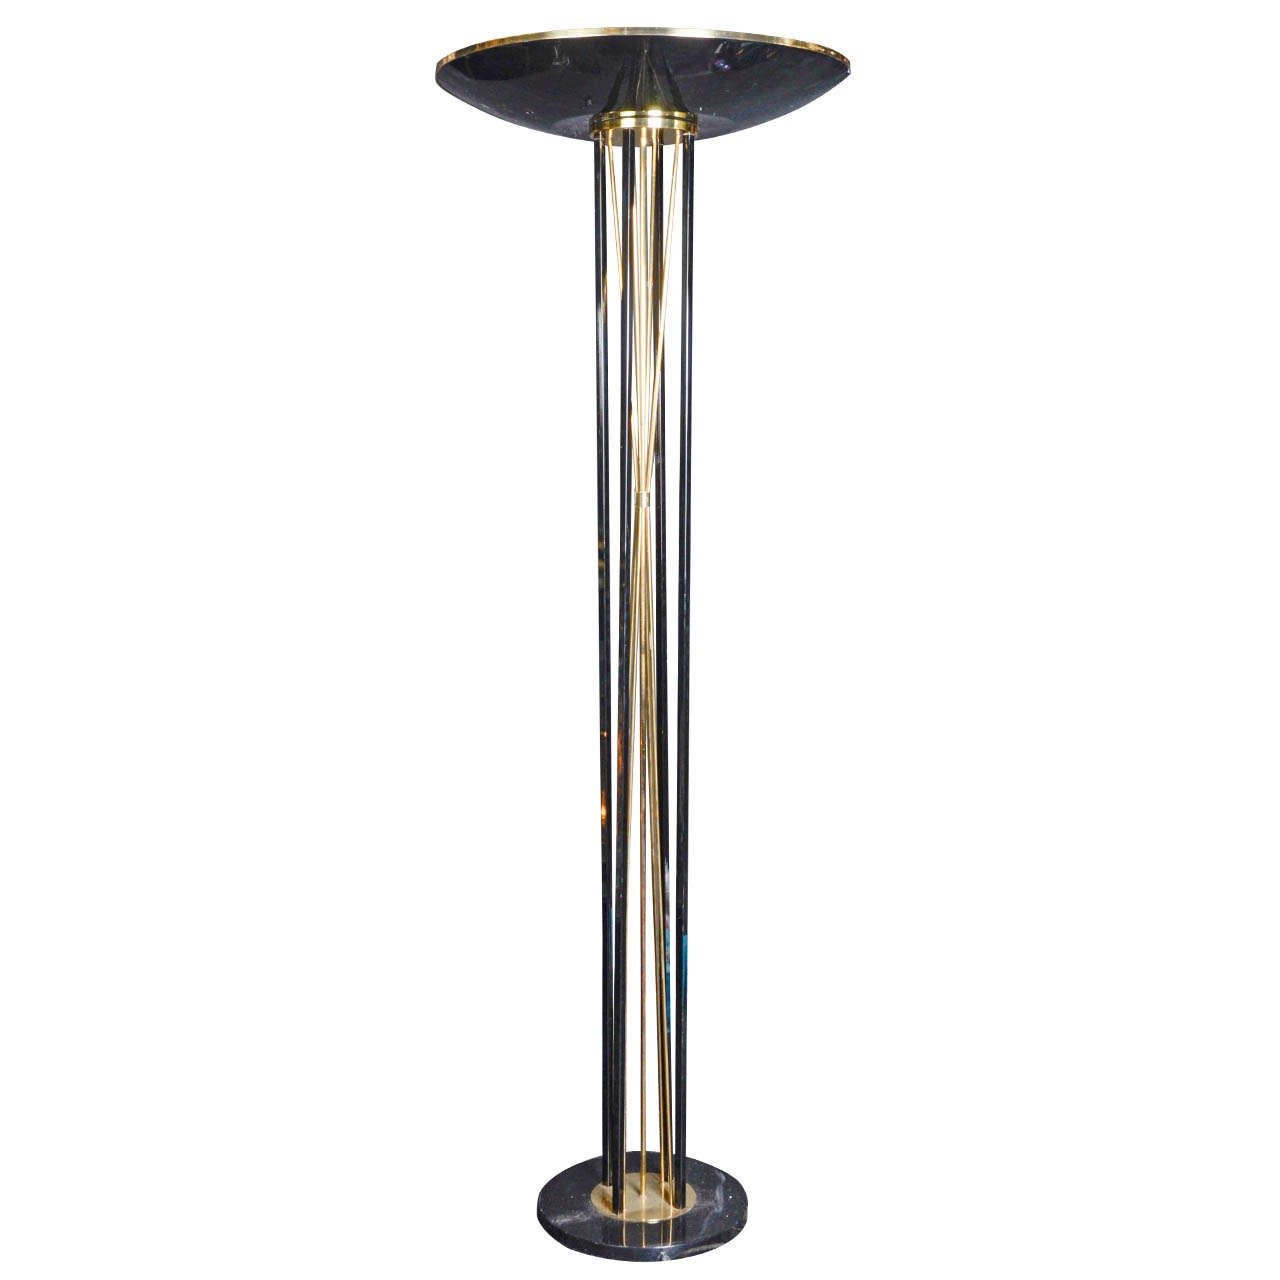 Floor Lamp with Halogen Lighting For Sale